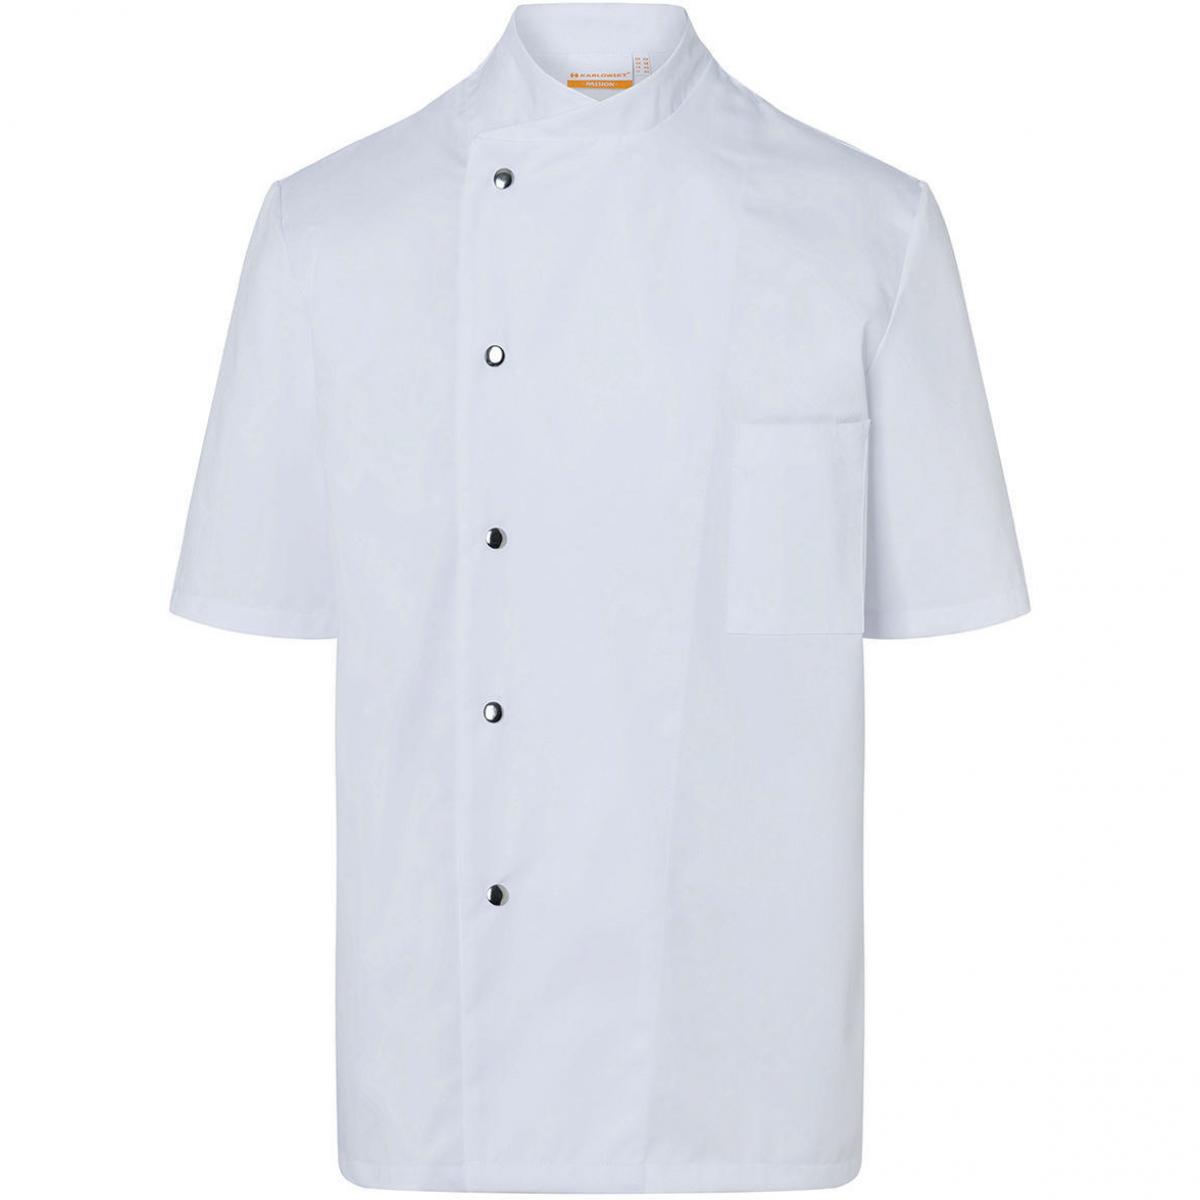 Hersteller: Karlowsky Herstellernummer: JM 15 Artikelbezeichnung: Chef Jacket Gustav Short Sleeve Waschbar bis 95°C Farbe: White